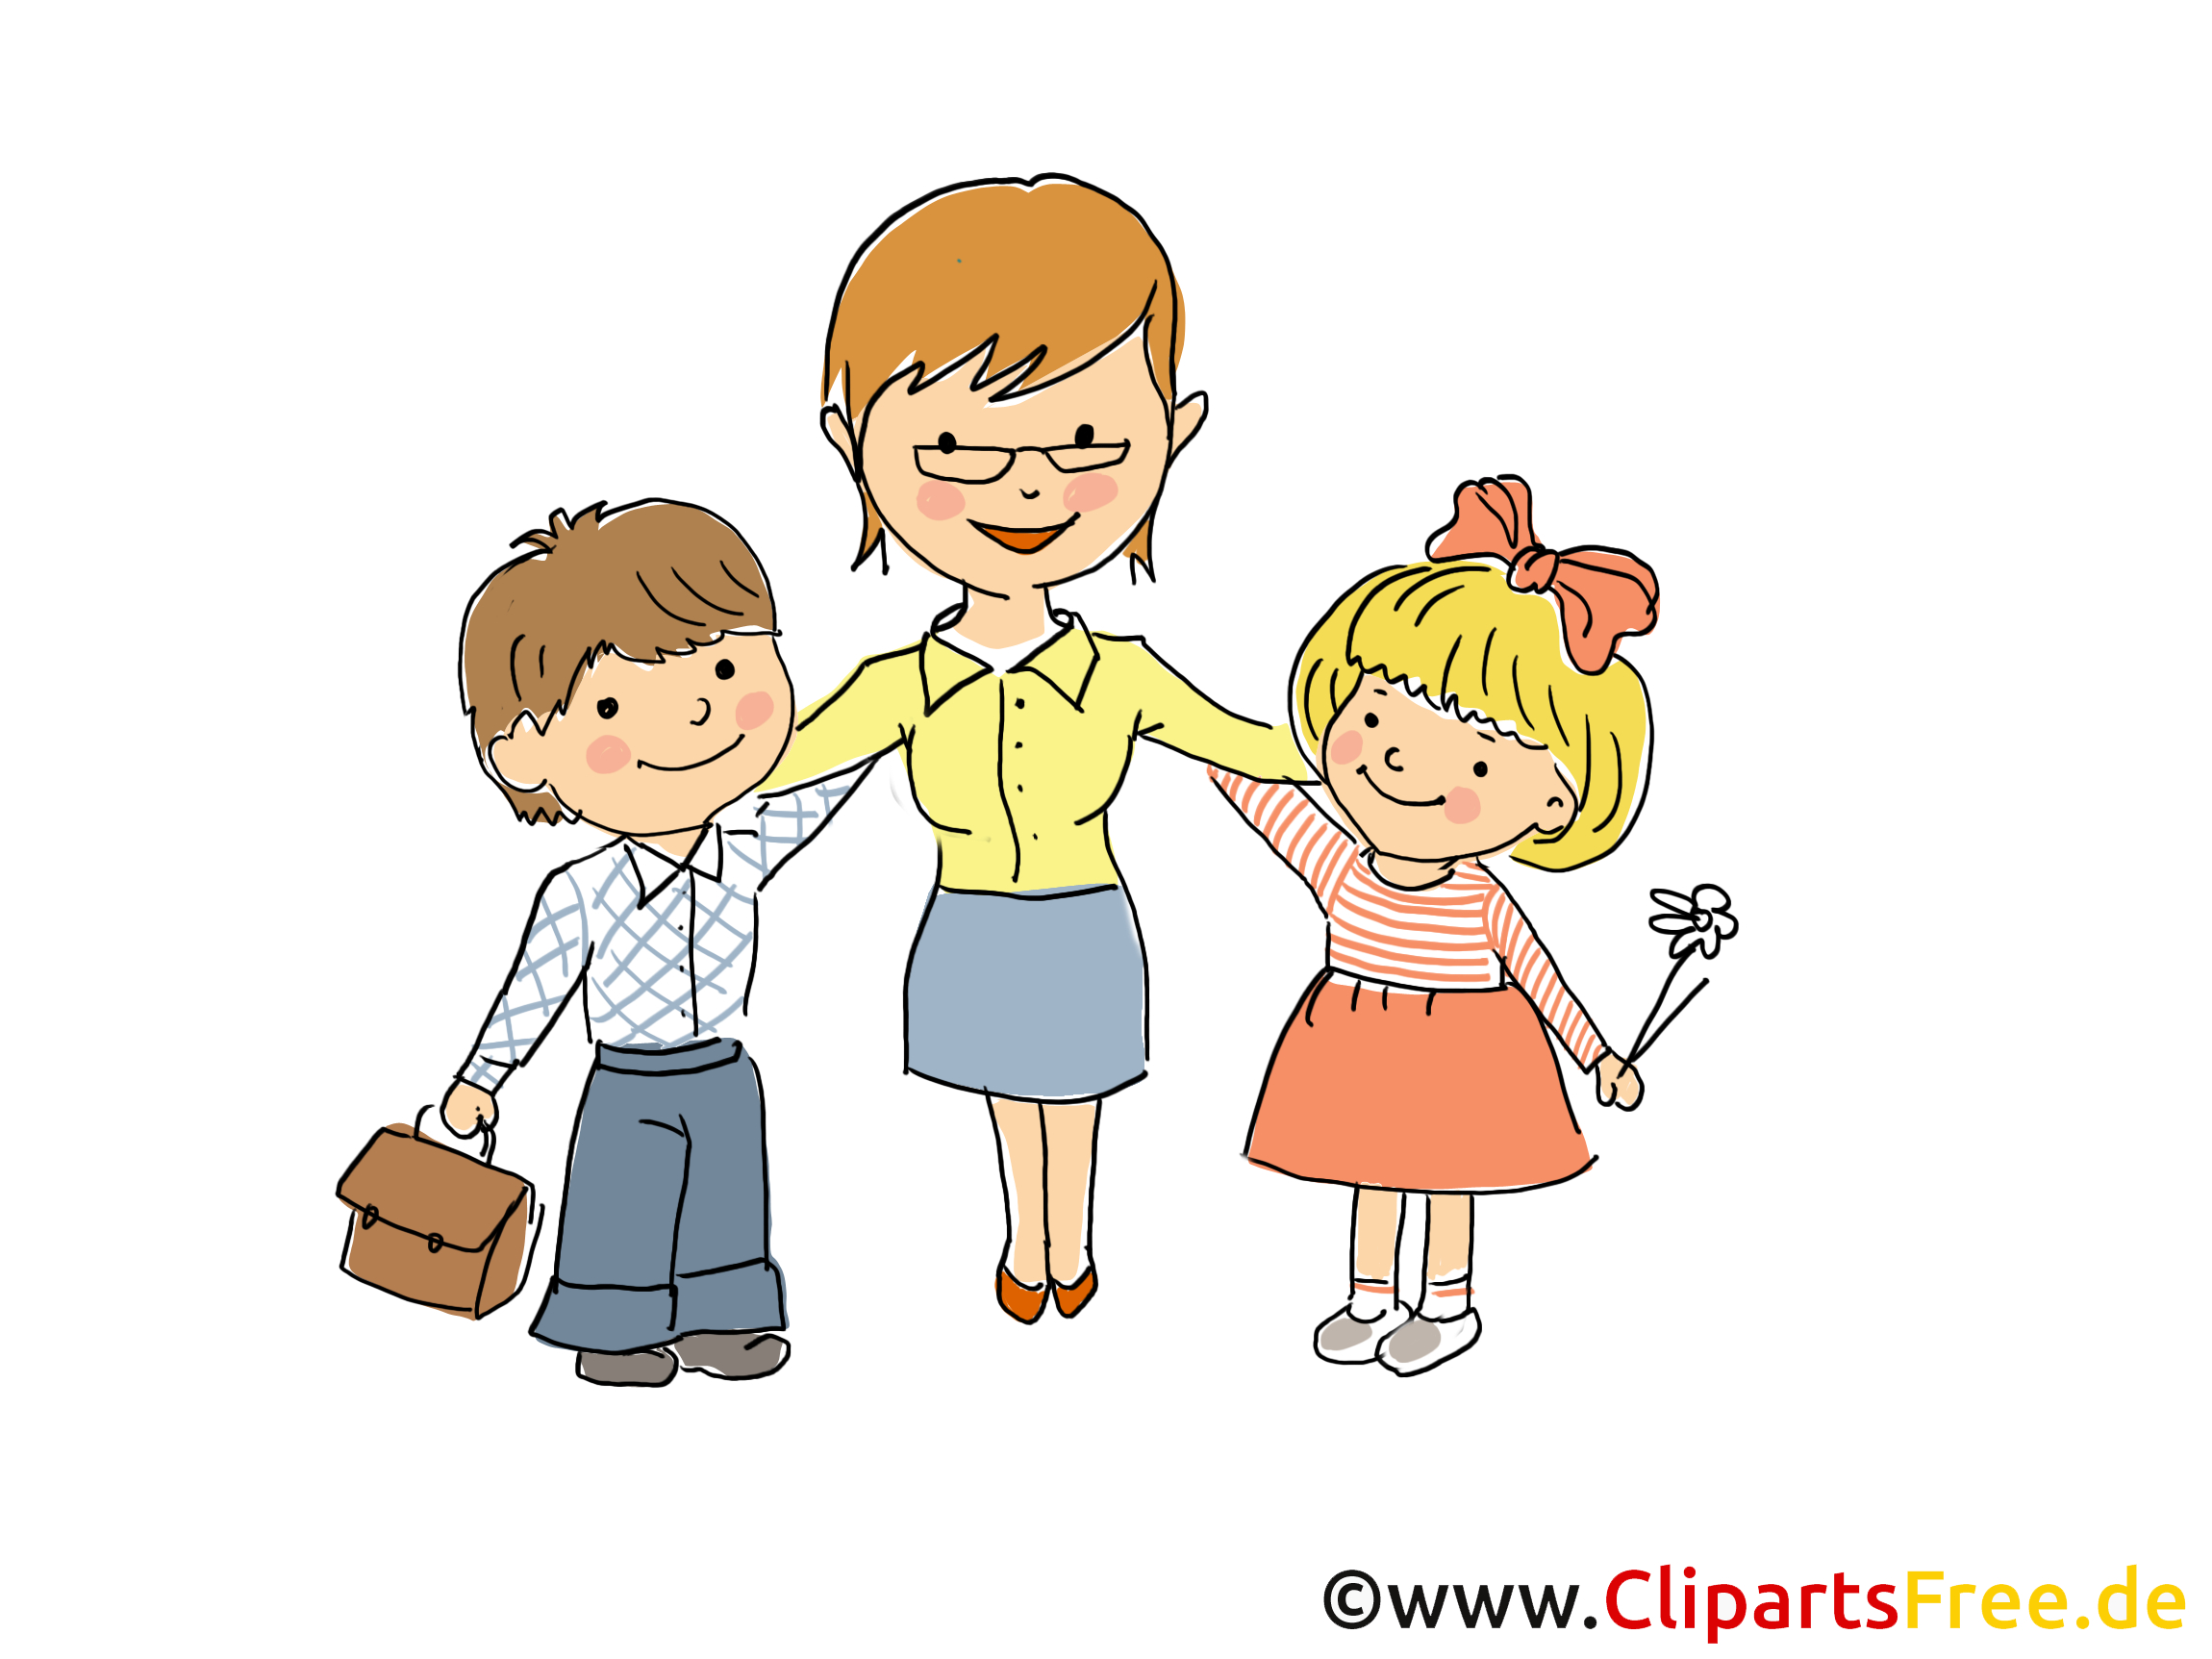 Begrüßung Kinder Clipart 5 » Clipart Station verwandt mit Bilder Kinder Clipart